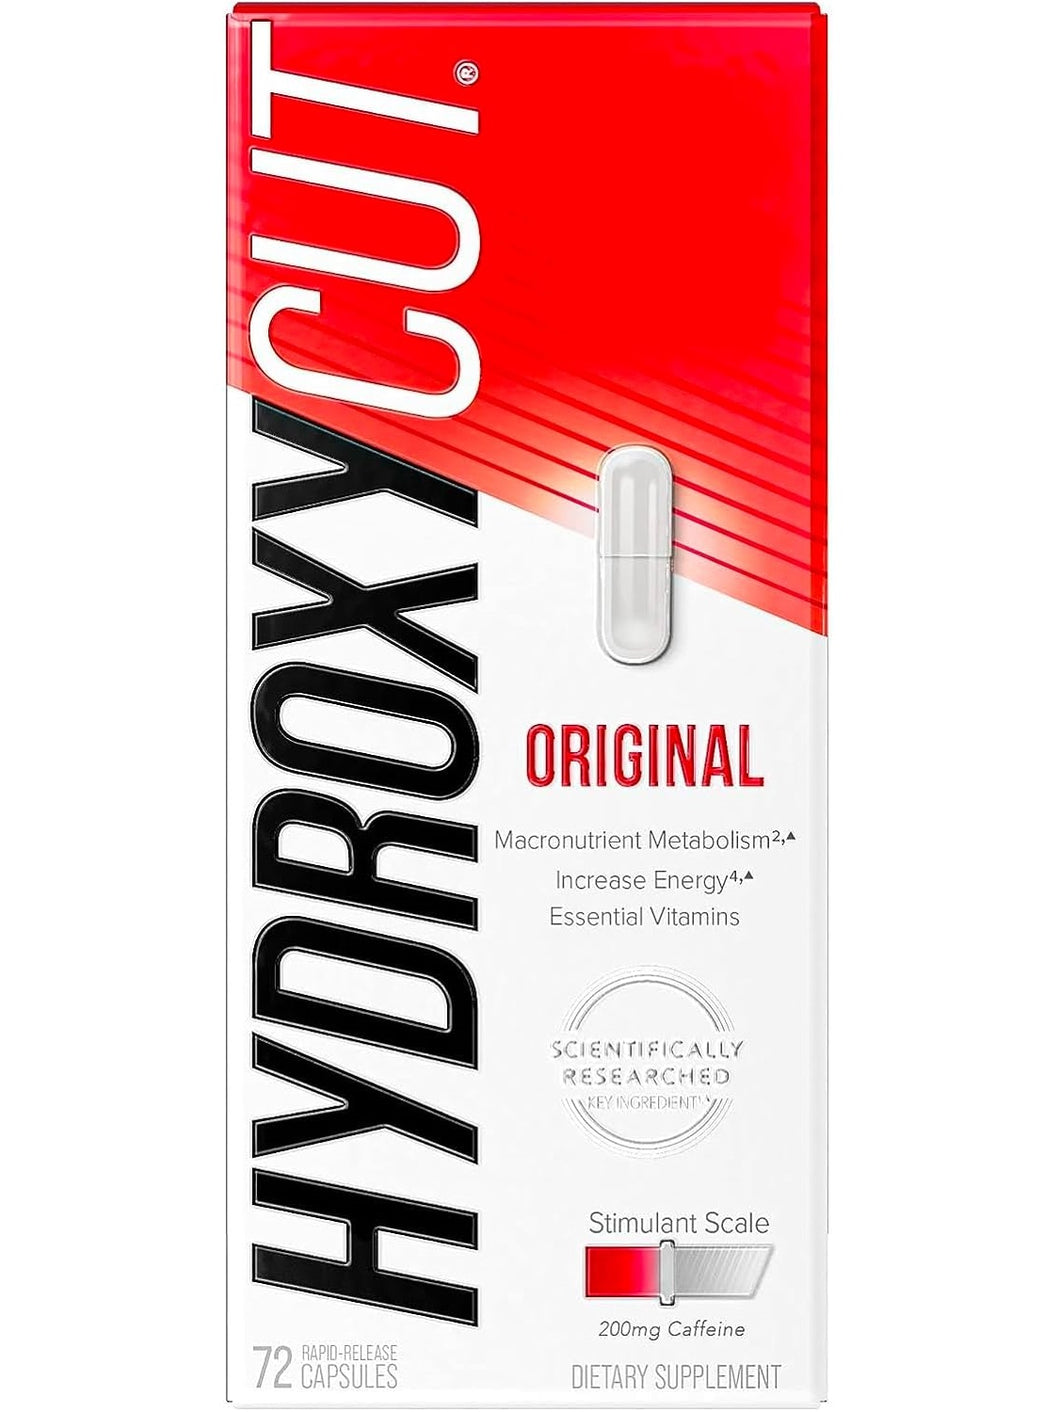 Hydroxycut Original, Quemador de grasa, incrementa energía, con nutrientes y vitaminas. 72 cápsulas.